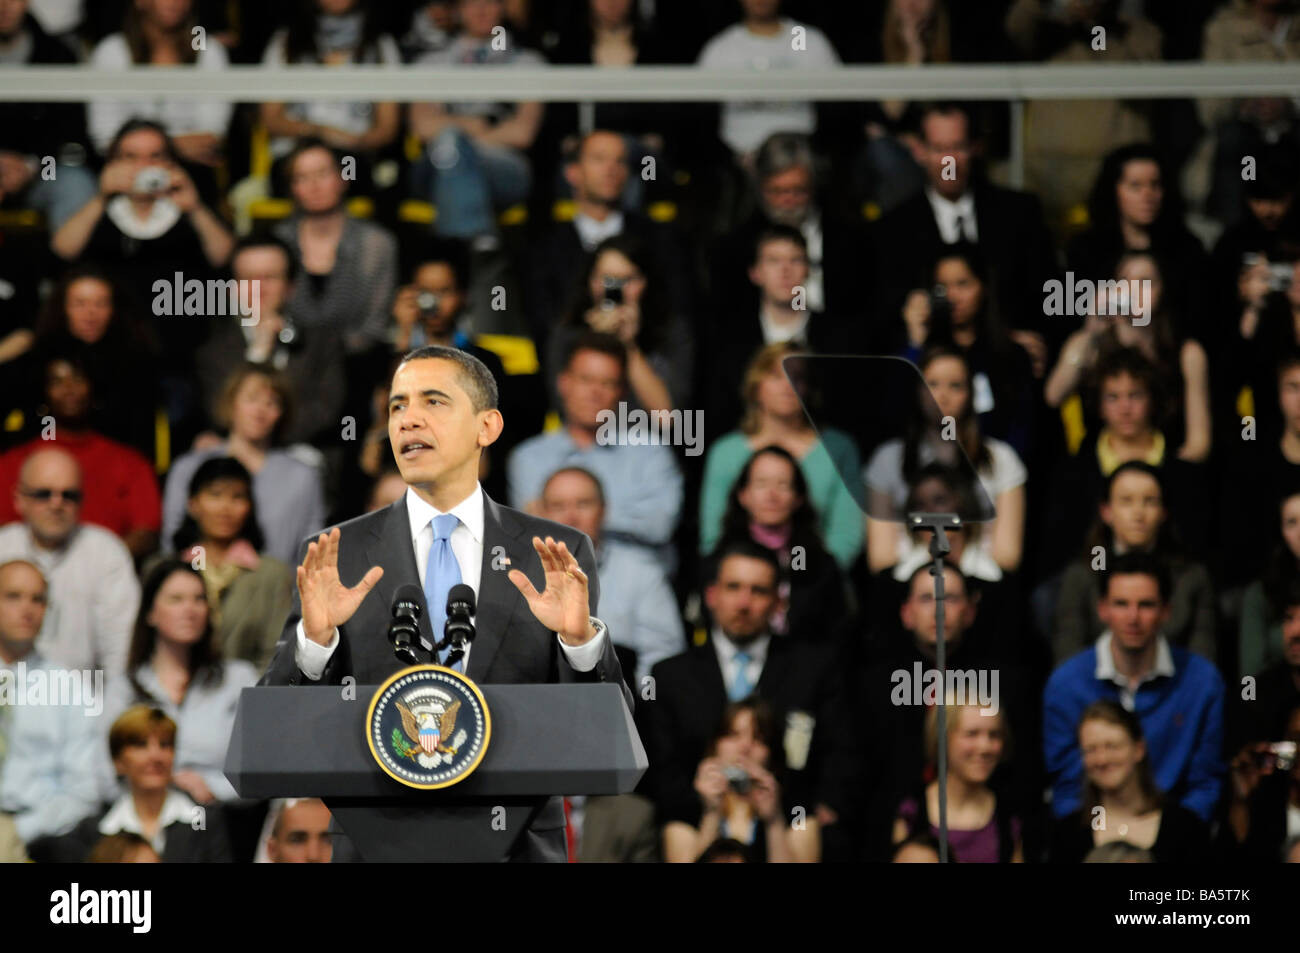 US-Präsident Barack Obama spricht während einer Konferenz organisiert beim NATO-Gipfel in Straßburg, Frankreich. Stockfoto